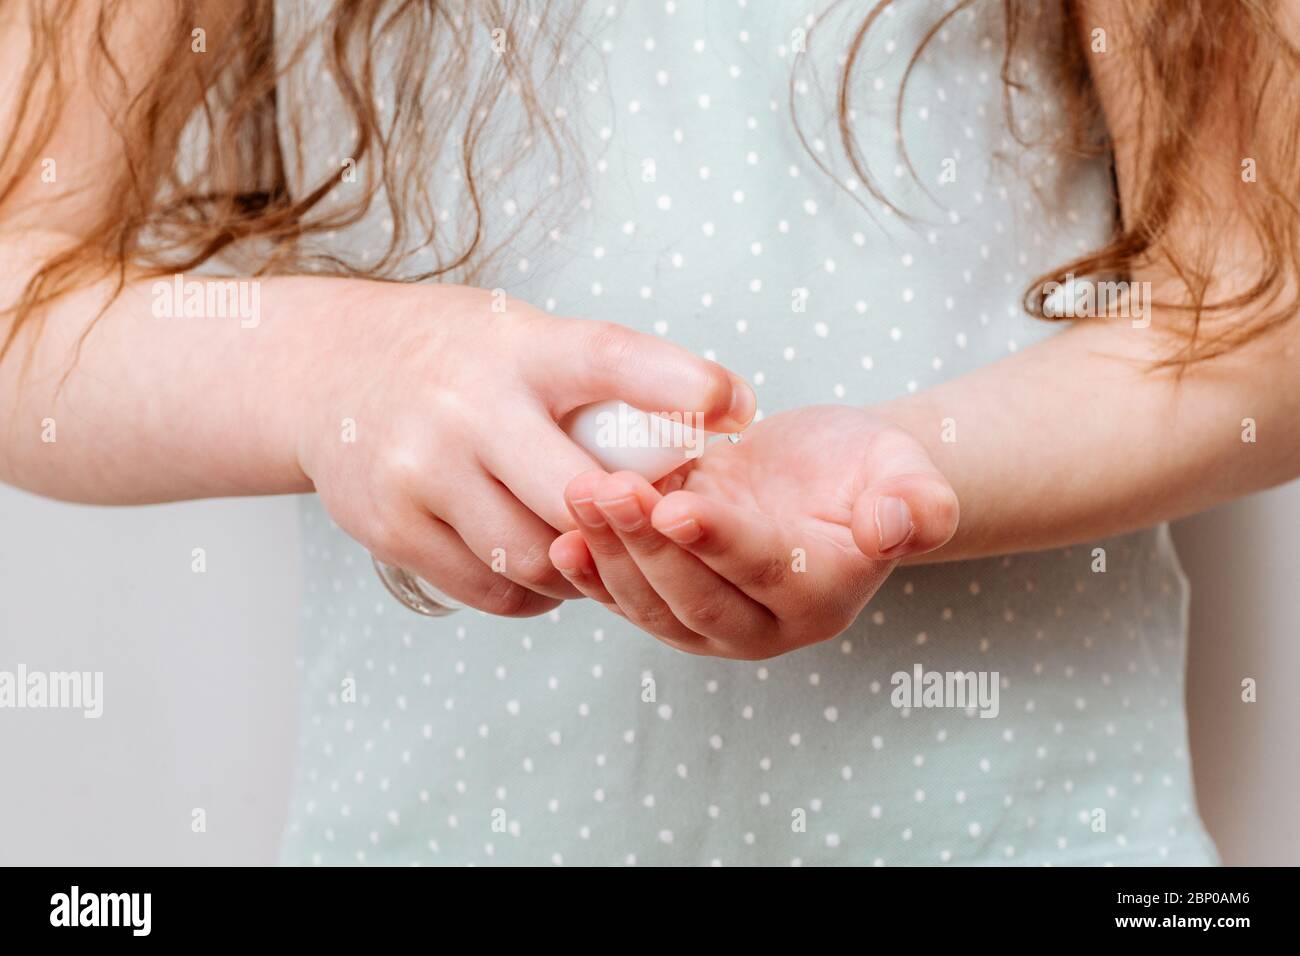 L'enfant utilise un désinfectant pour les mains. Concept d'hygiène. Banque D'Images